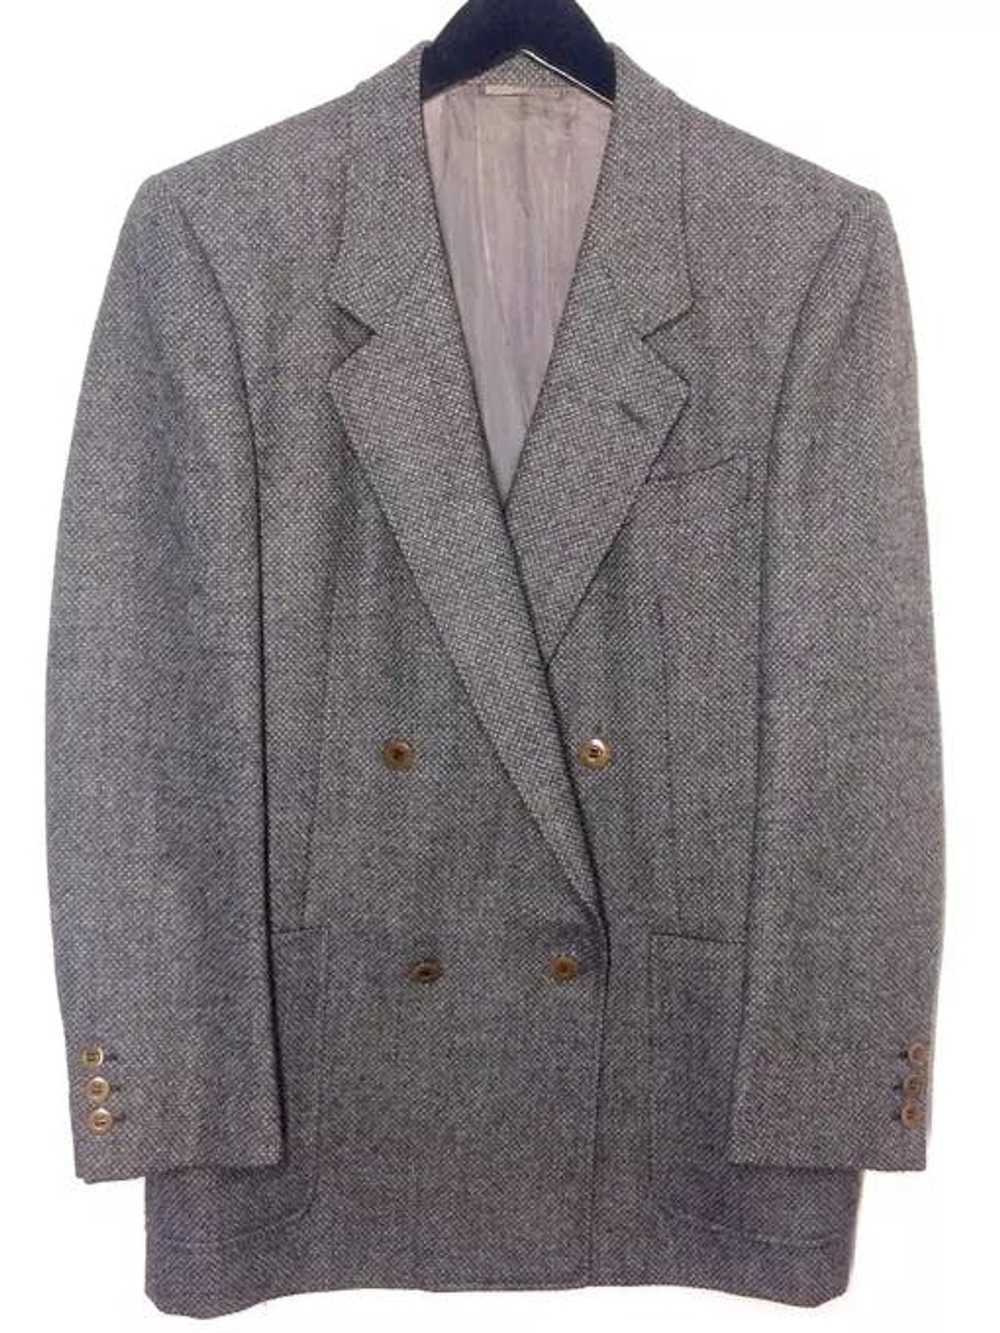 Gucci × Vintage 70's Gucci alpaca tweed jacket - image 2